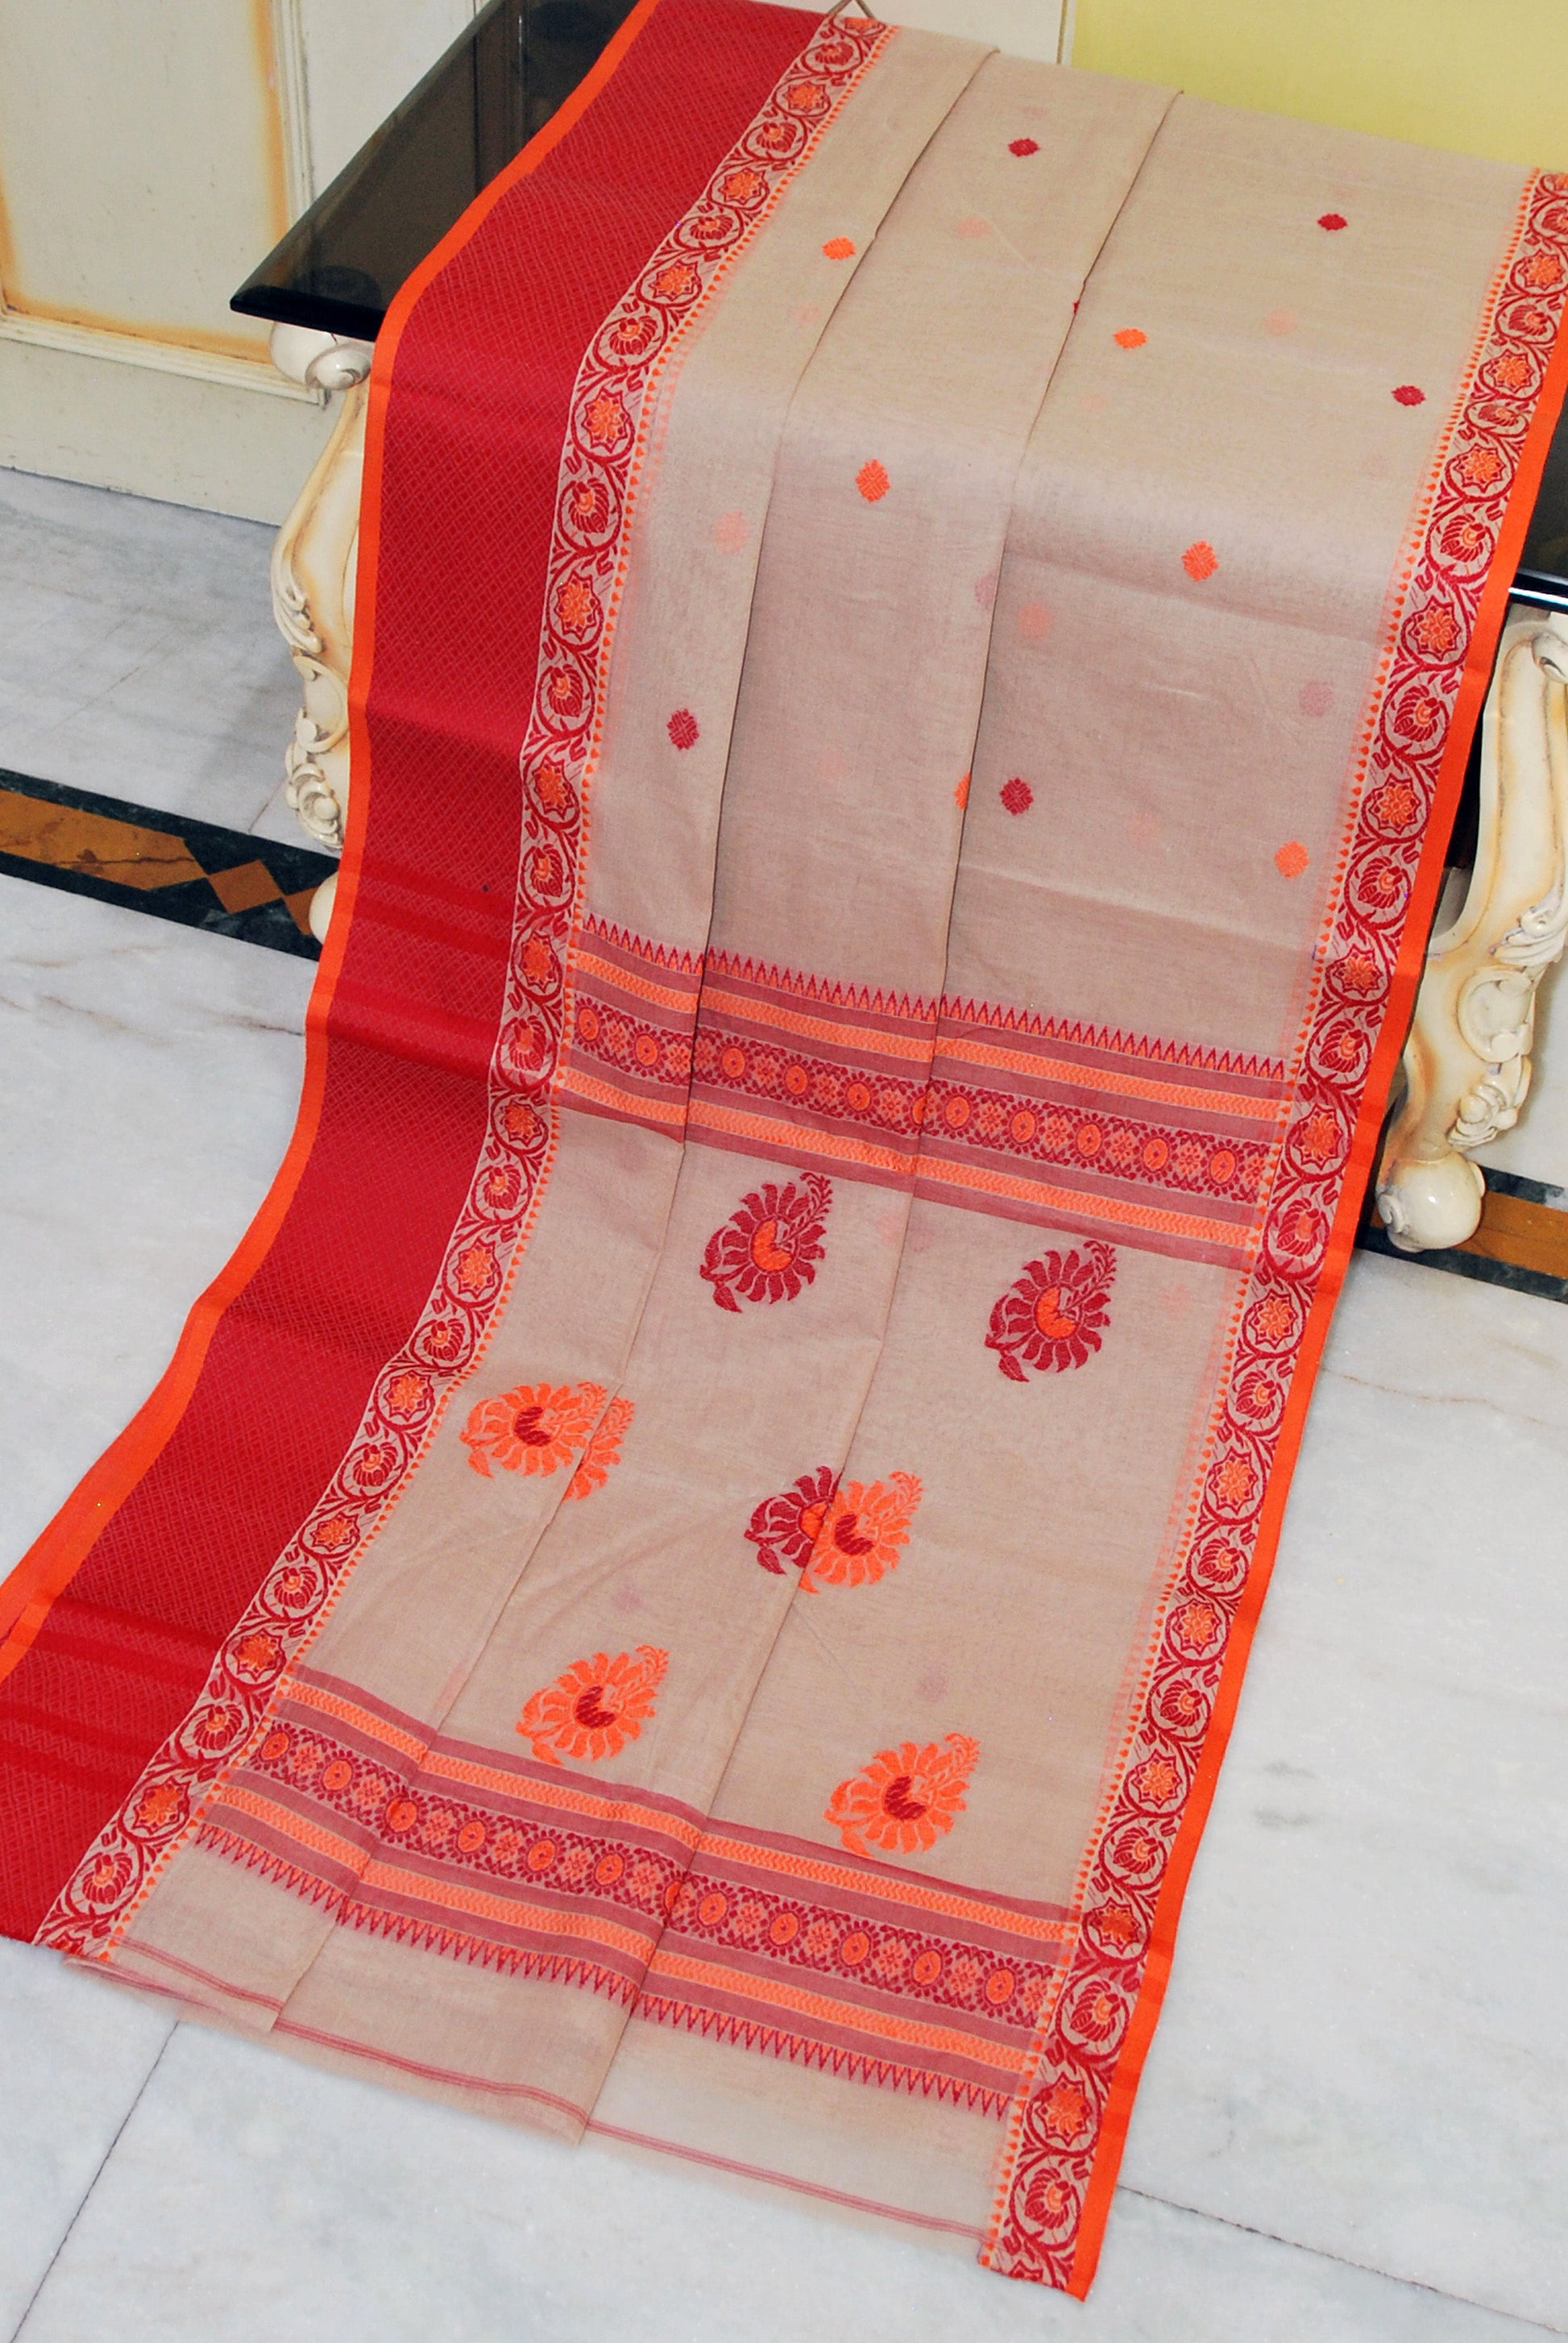 Bengal Handloom Thread Work Bomkai Cotton Saree in Hazelnut Beige, Red and Orange